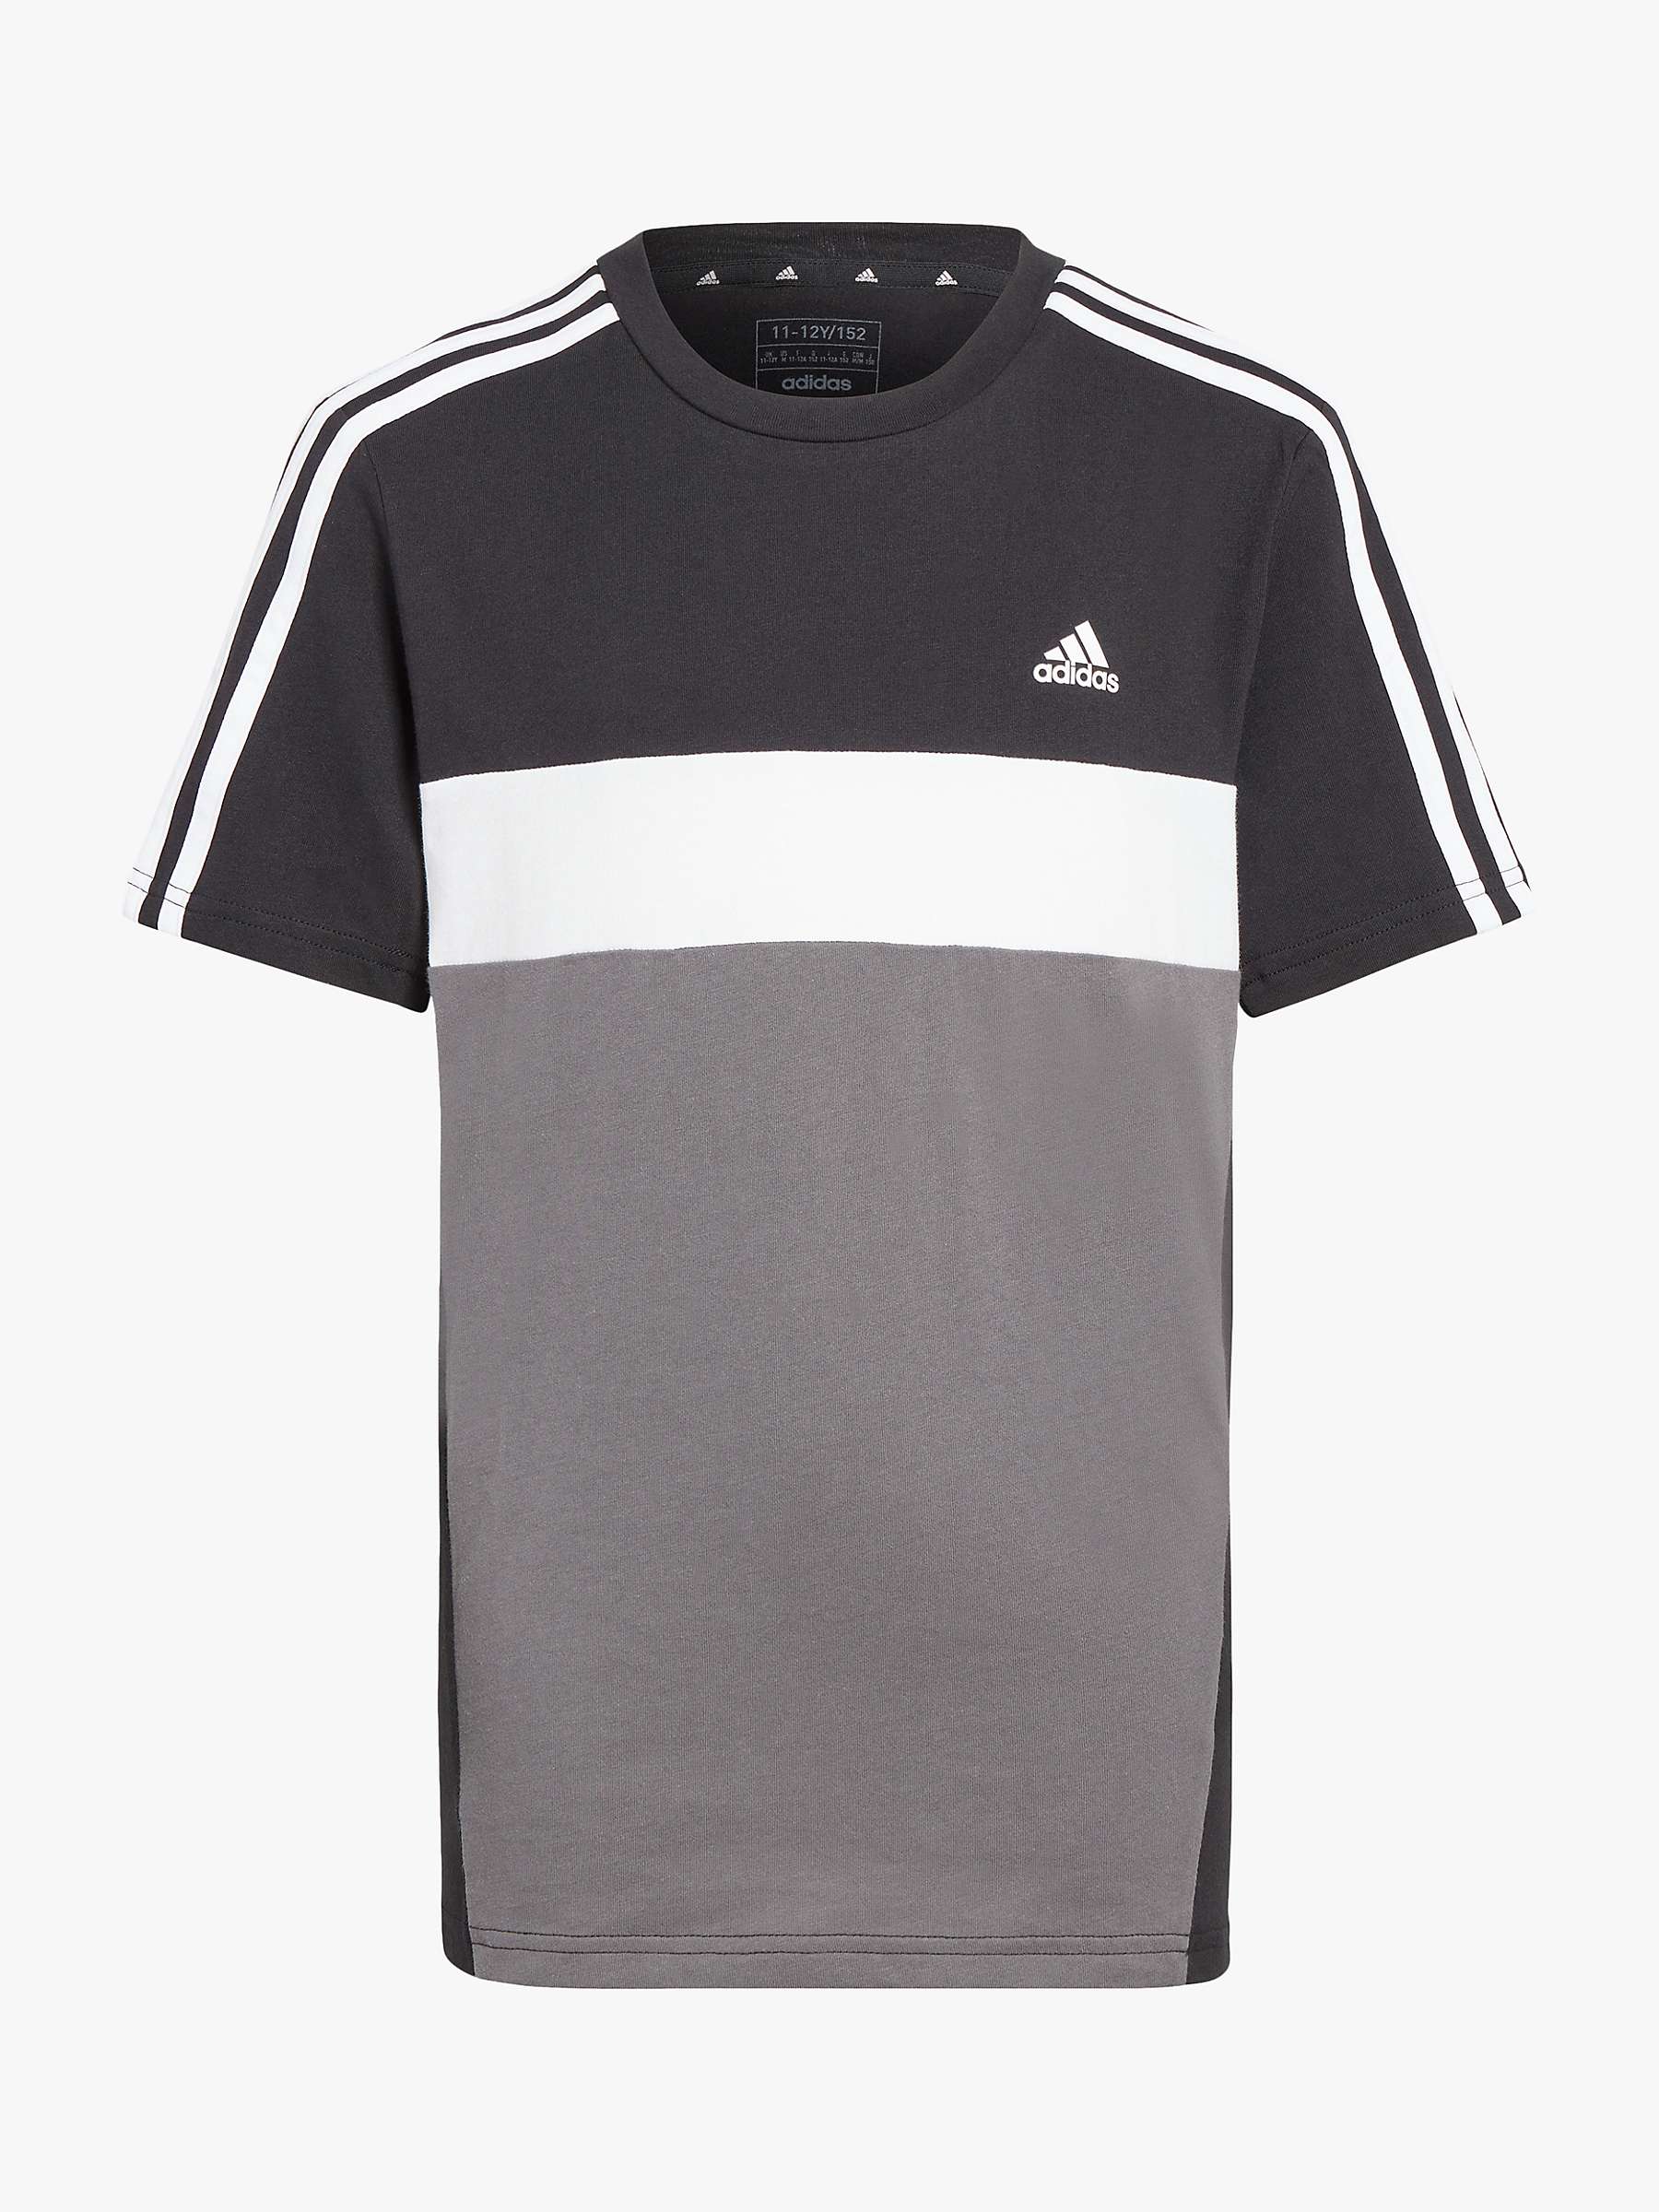 Buy adidas Kids' 3-Stripe TIB T-Shirt Online at johnlewis.com